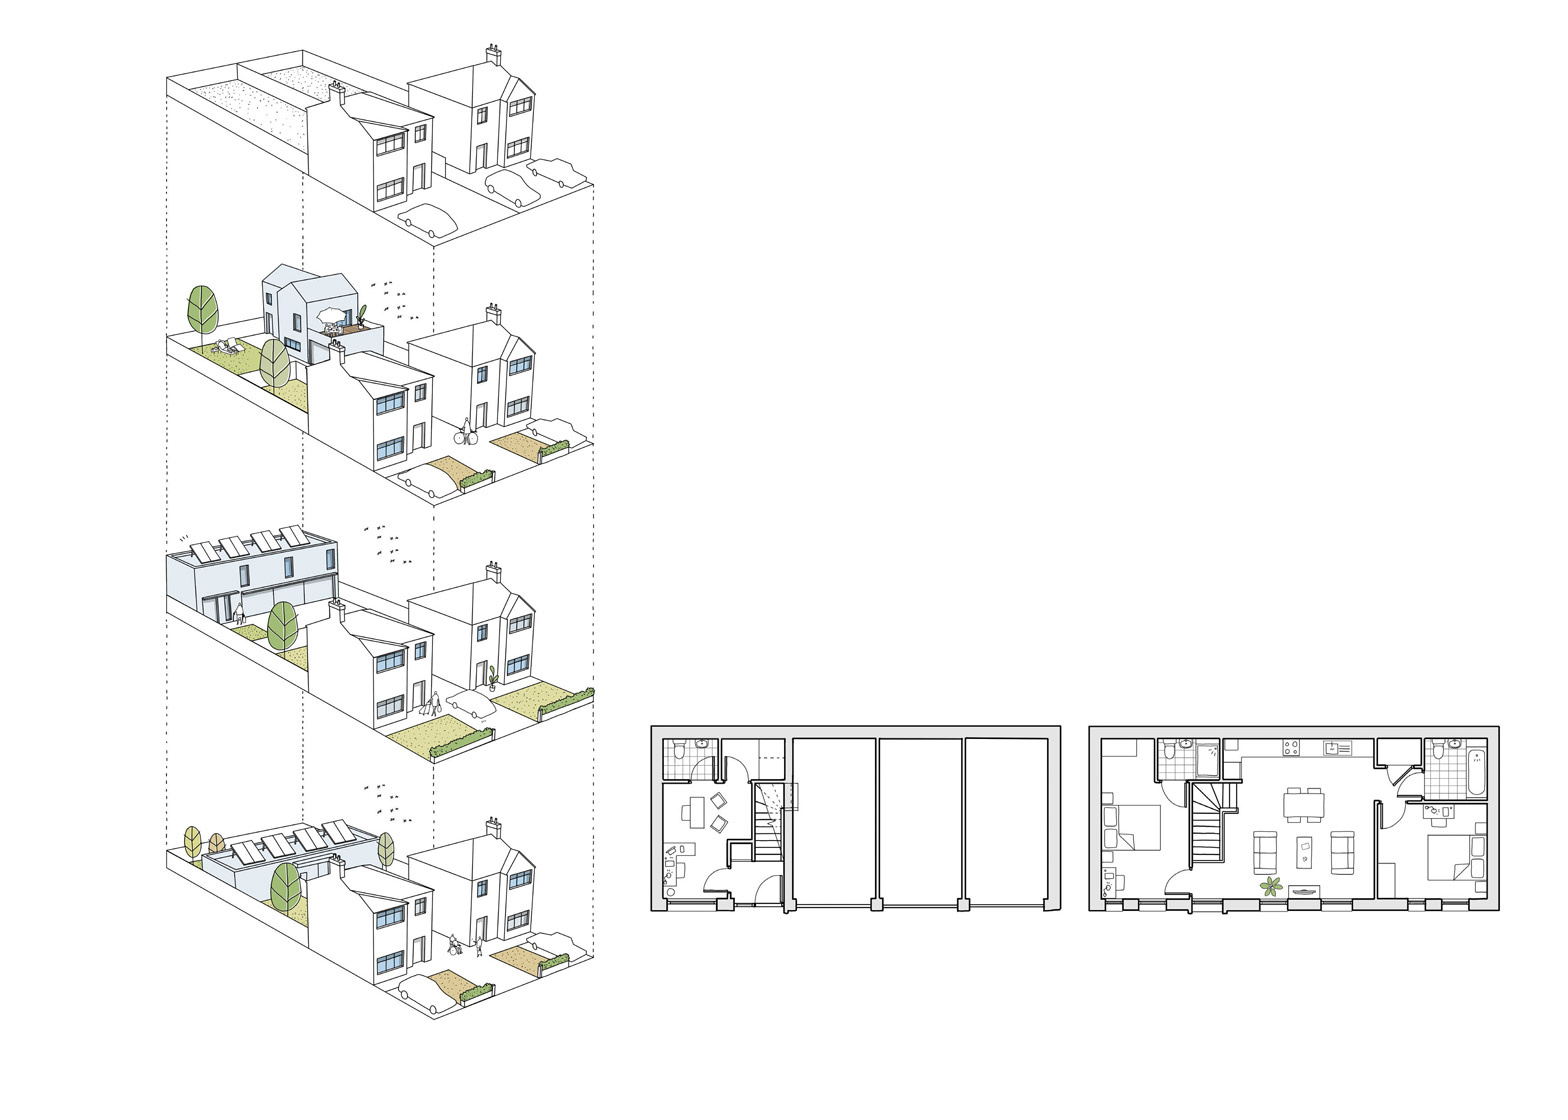 Így lehetne bepréselni még egy-két házat a külvárosi ikerházak közé a HTA Design tervezői szerint.